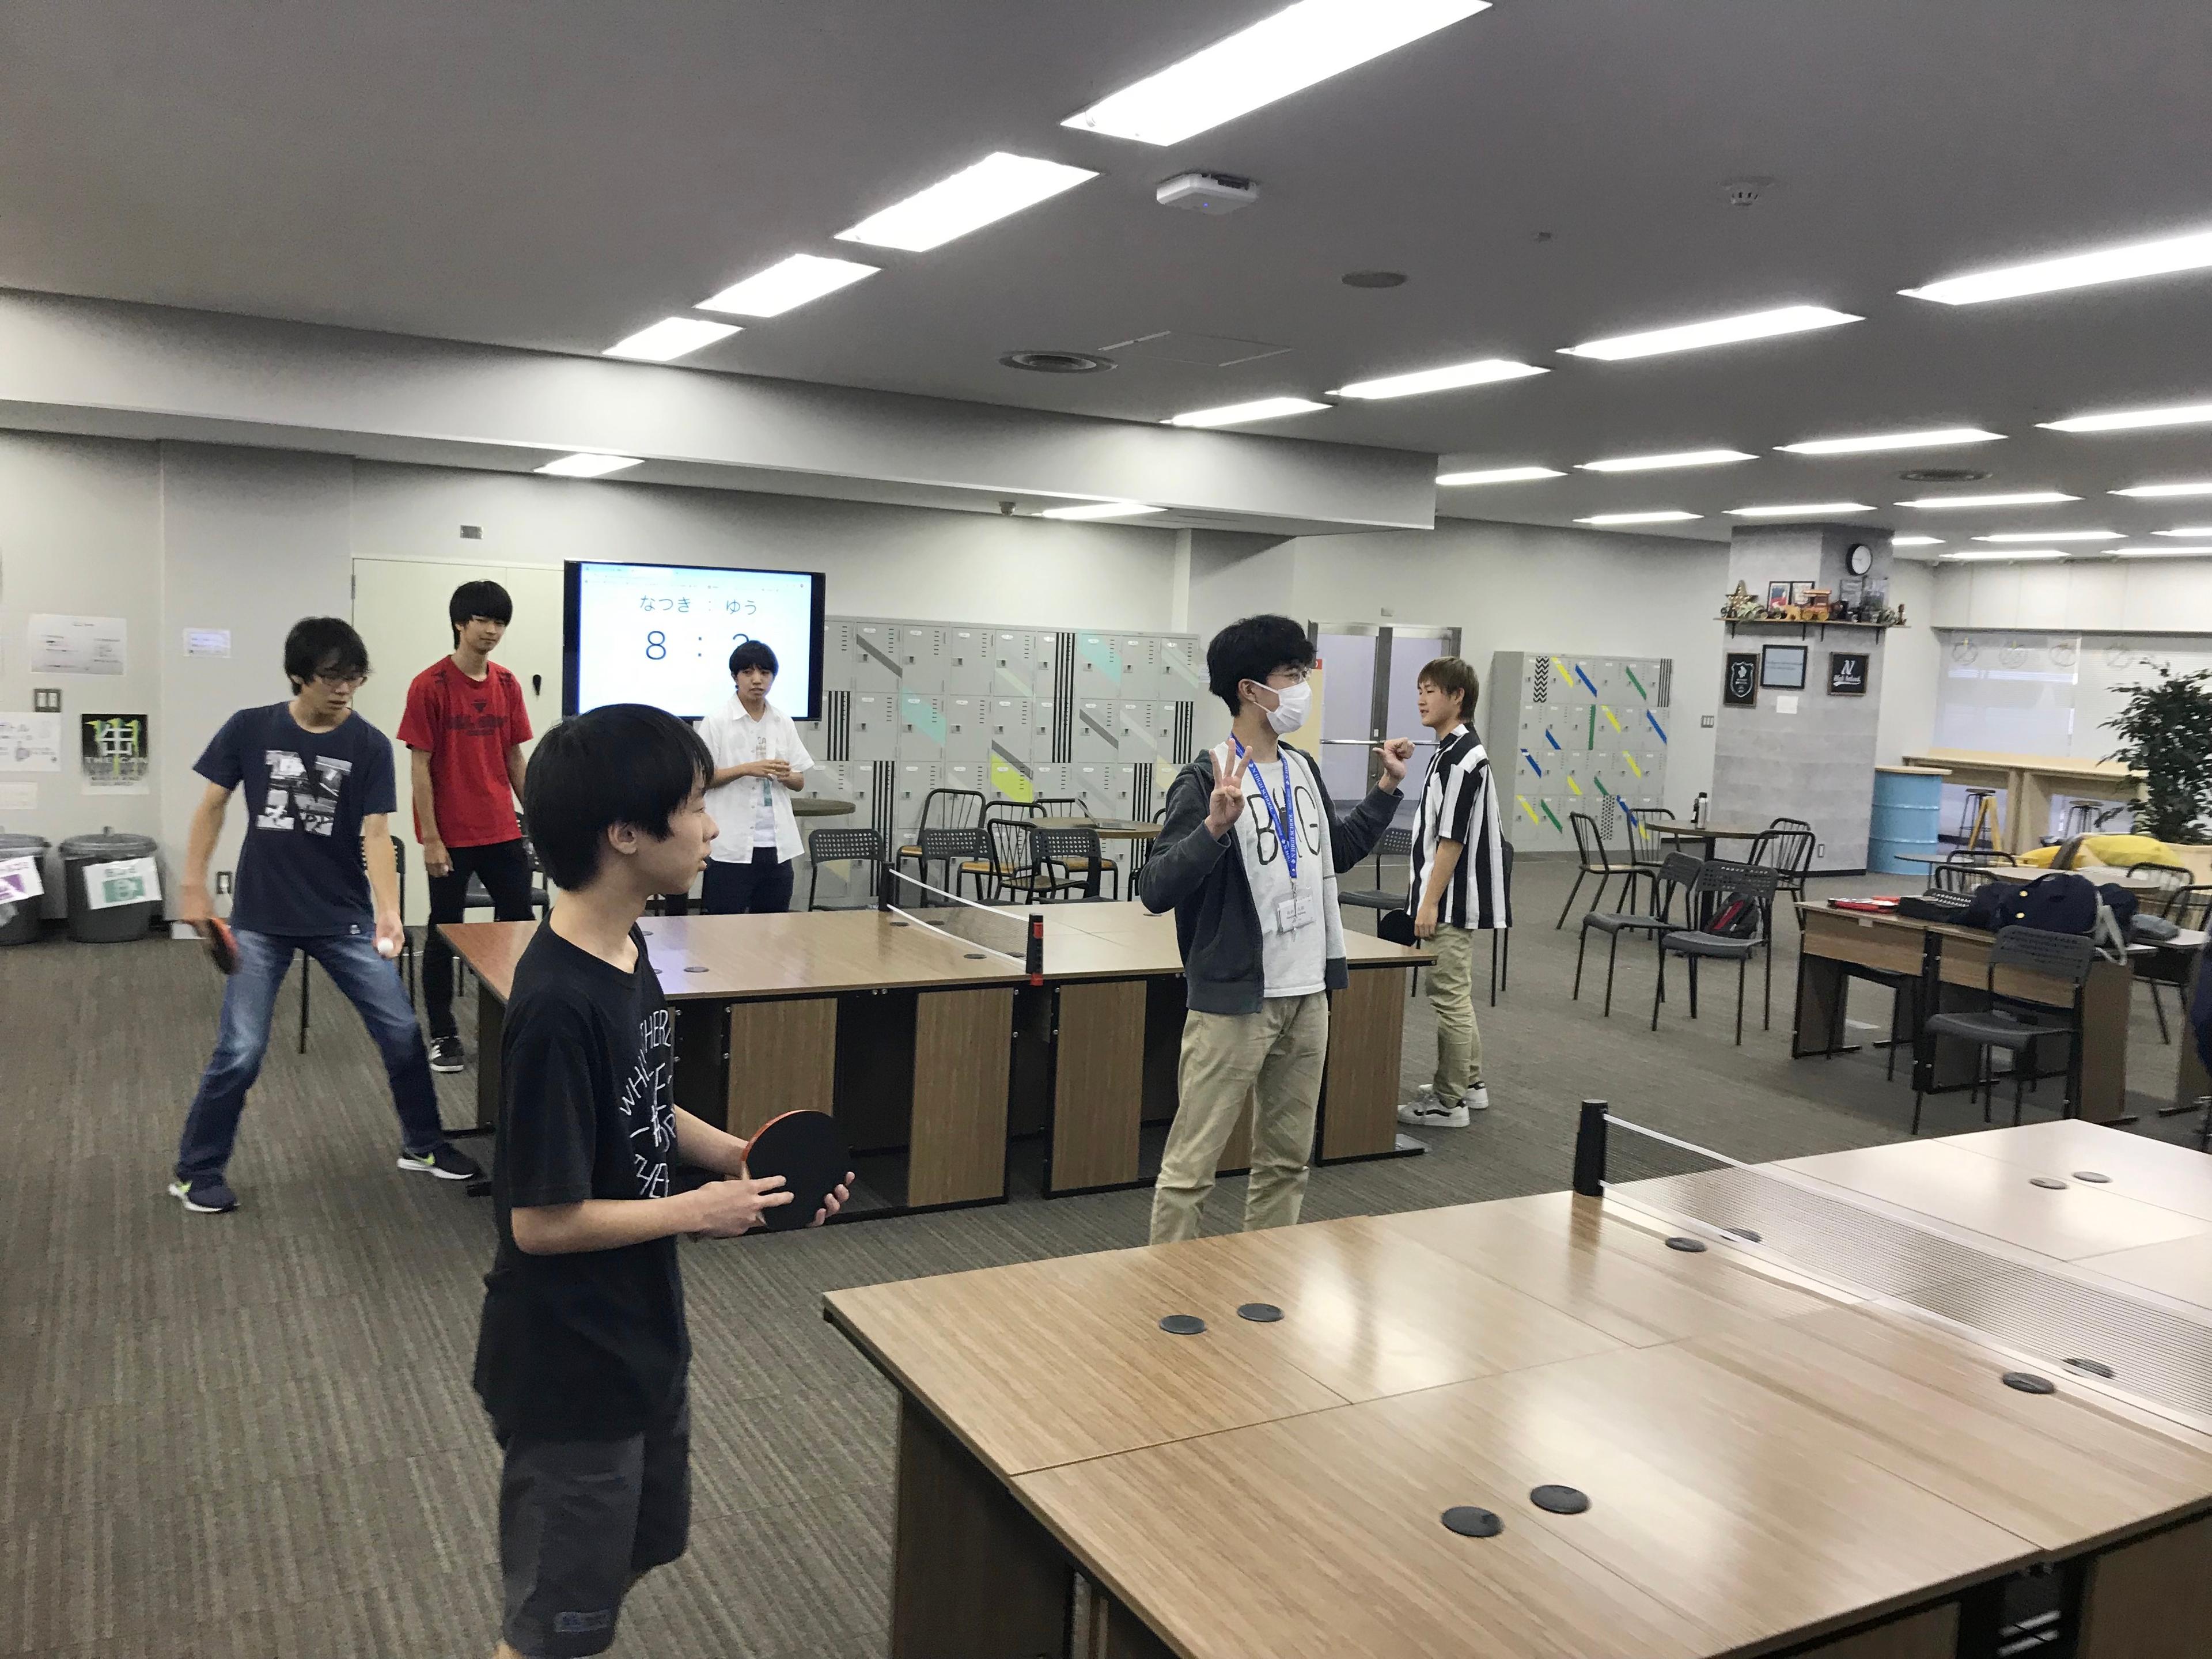 立川キャンパス初の放課後イベント「卓球大会」を開催